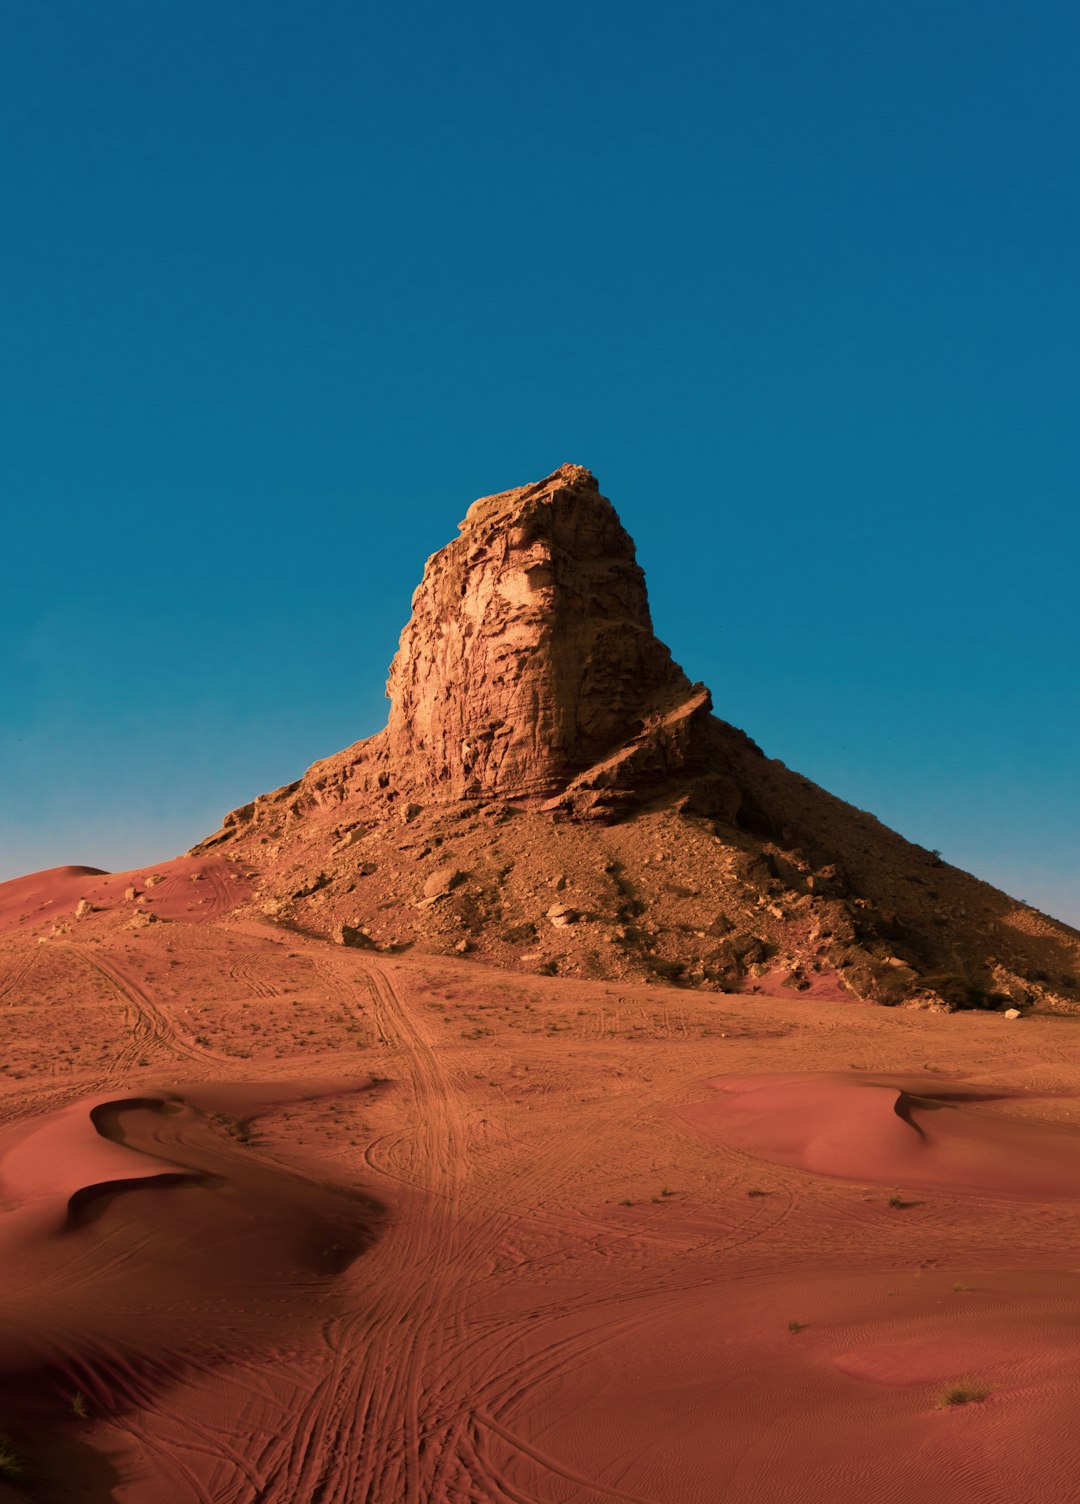 Desert photo spot Sharjah Ras al Khaimah - United Arab Emirates